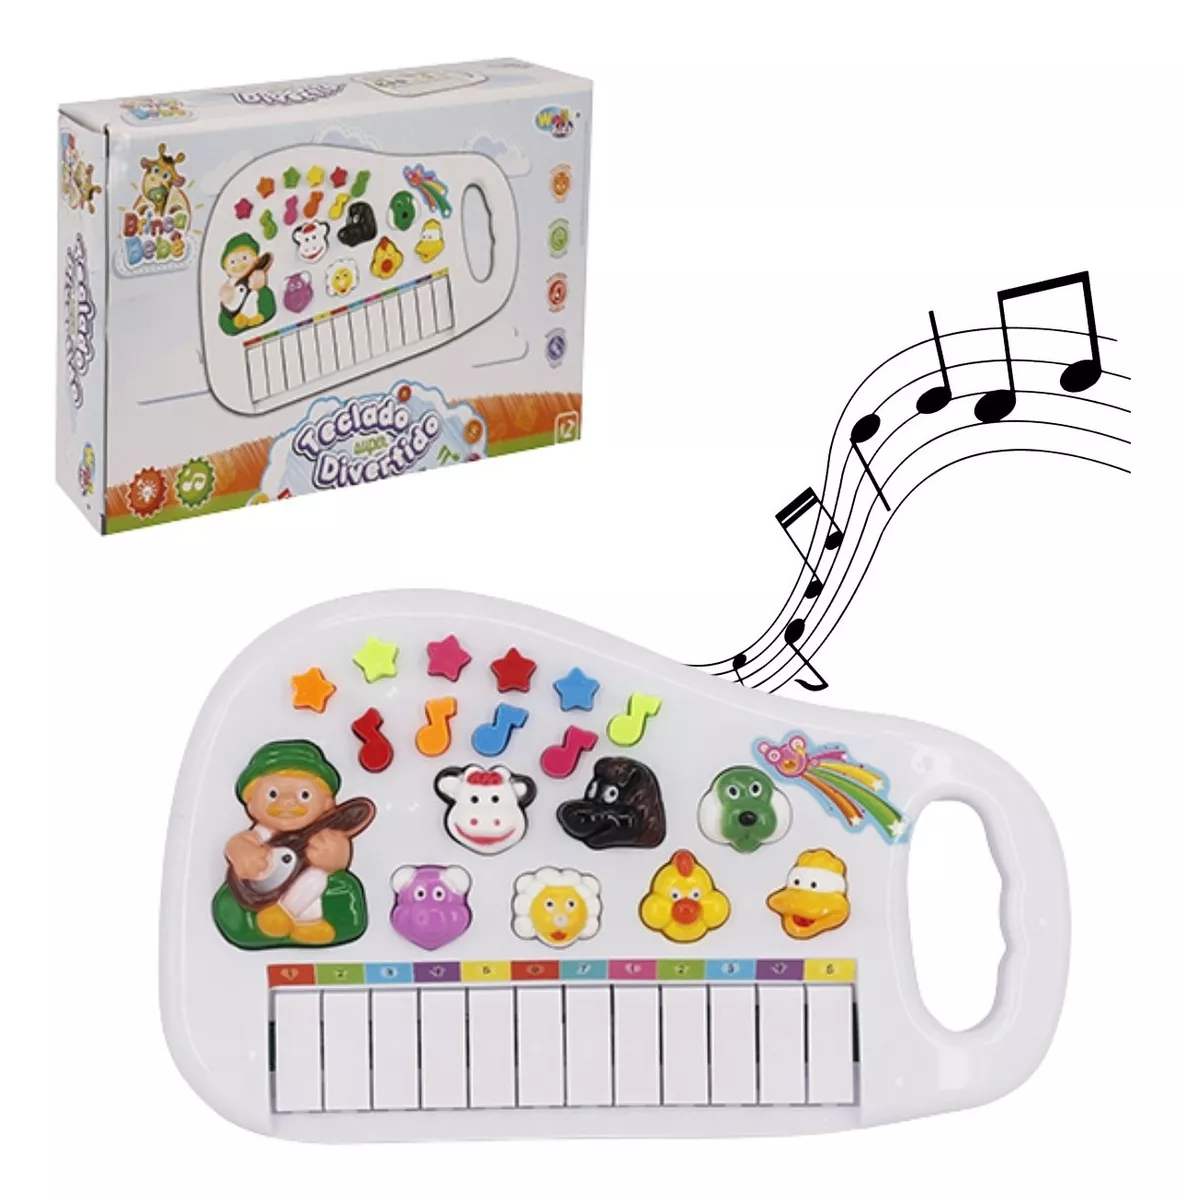  Piano Teclado Musical Infantil Fazendinha Imita Bichinhos